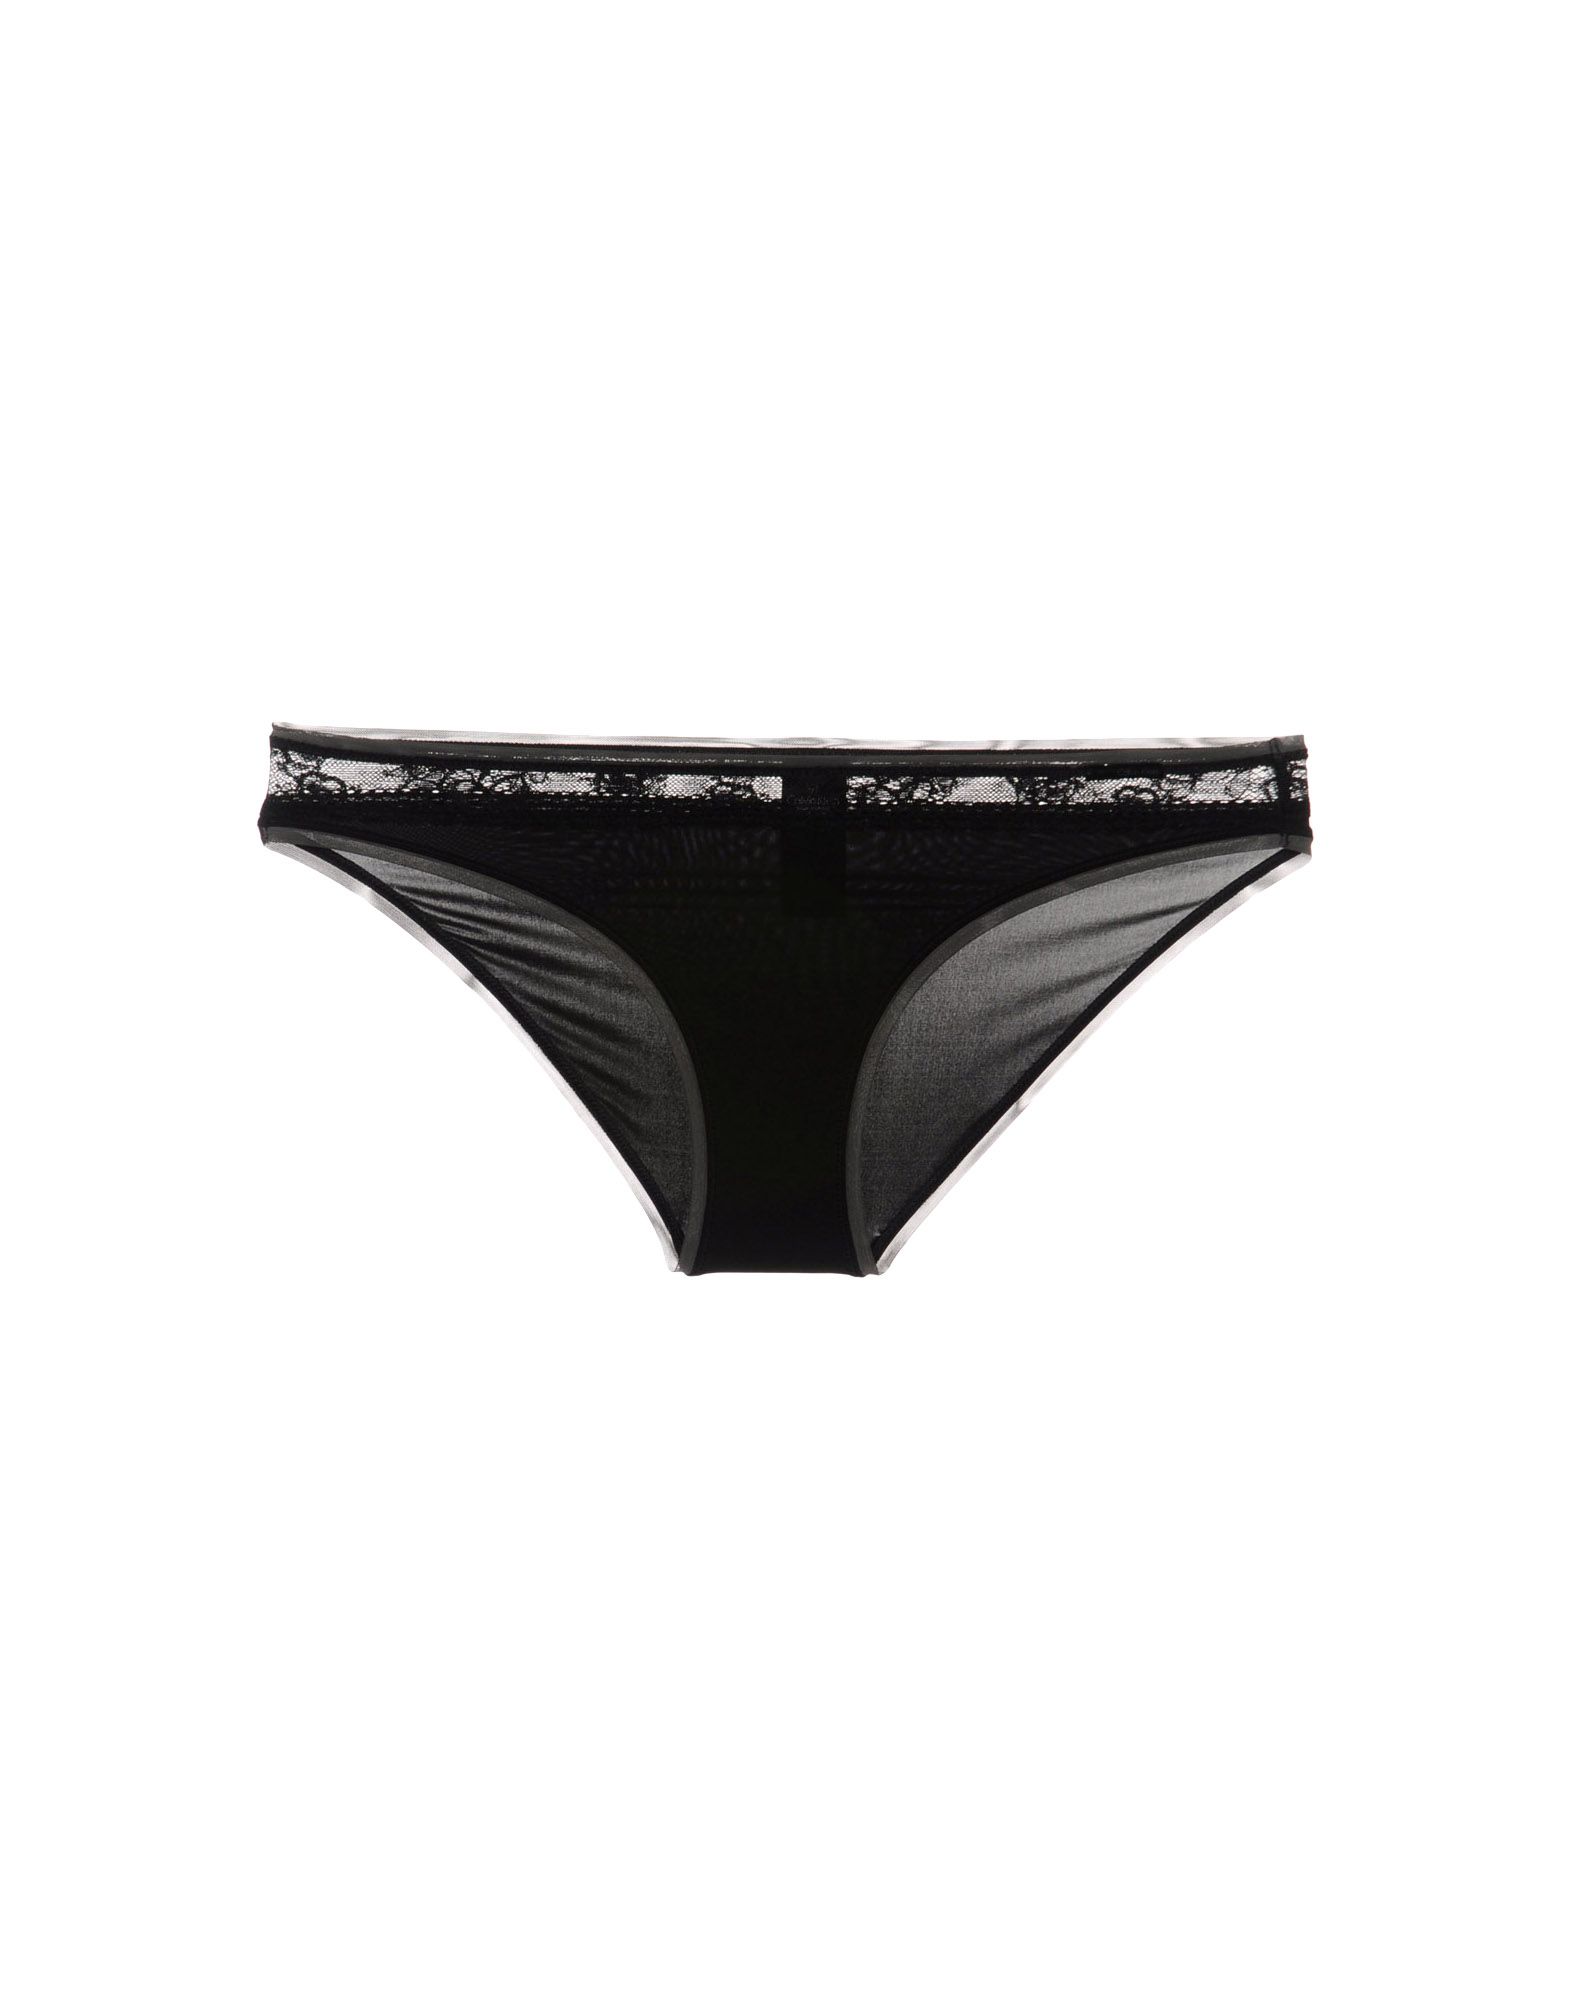 Foto Calvin Klein Underwear Slips Mujer Negro foto 788758